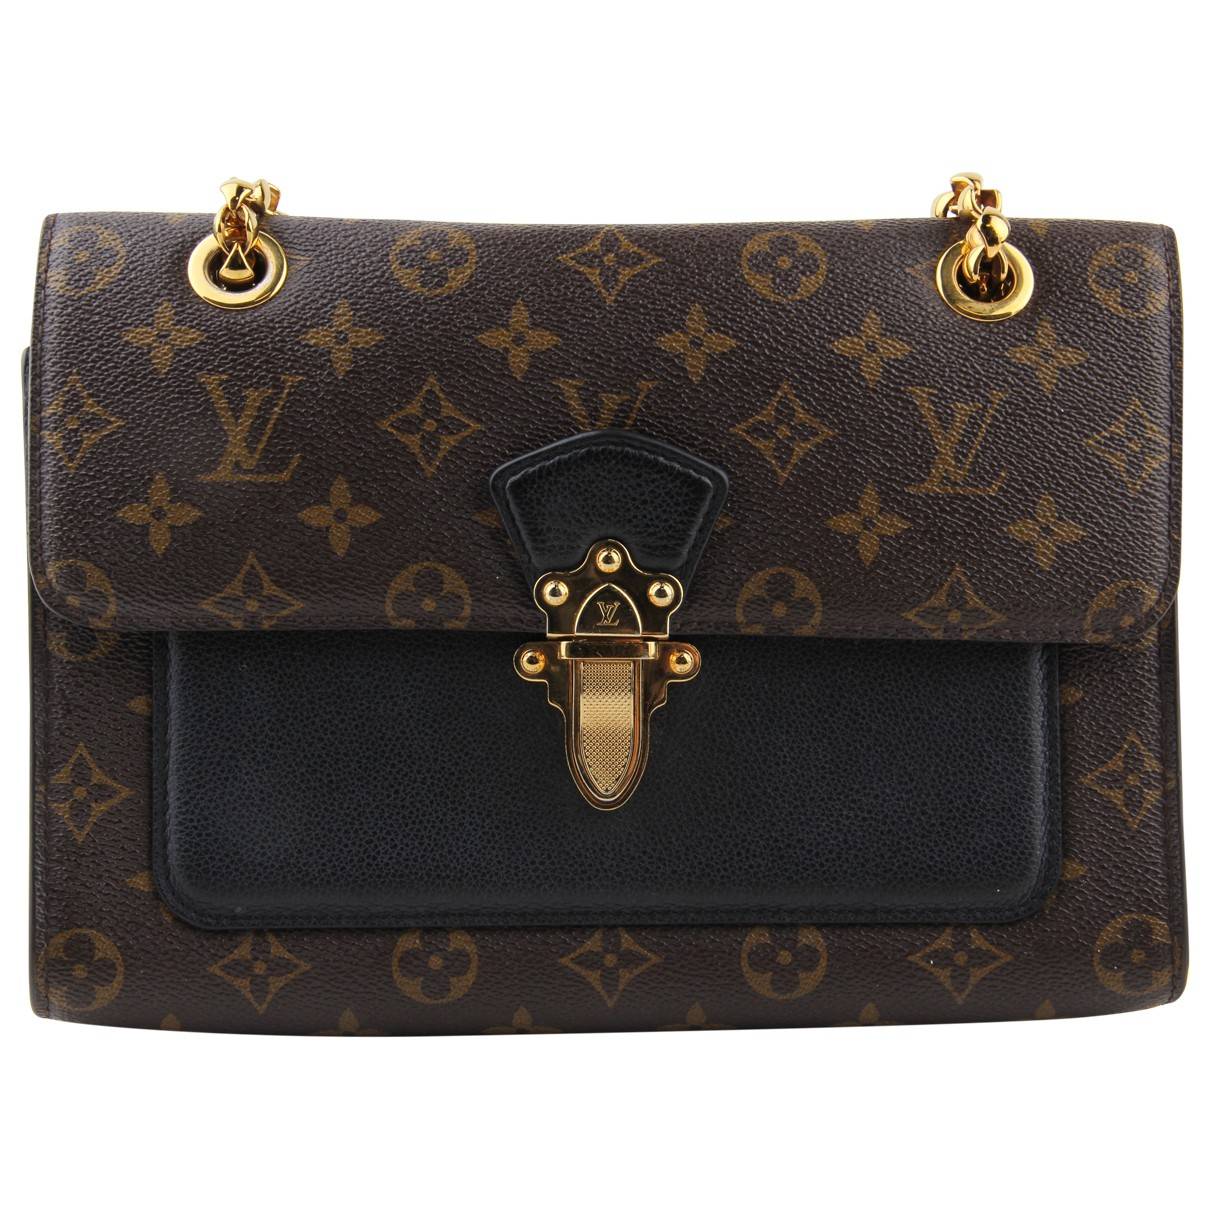 Louis Vuitton Victoire Leather Handbag